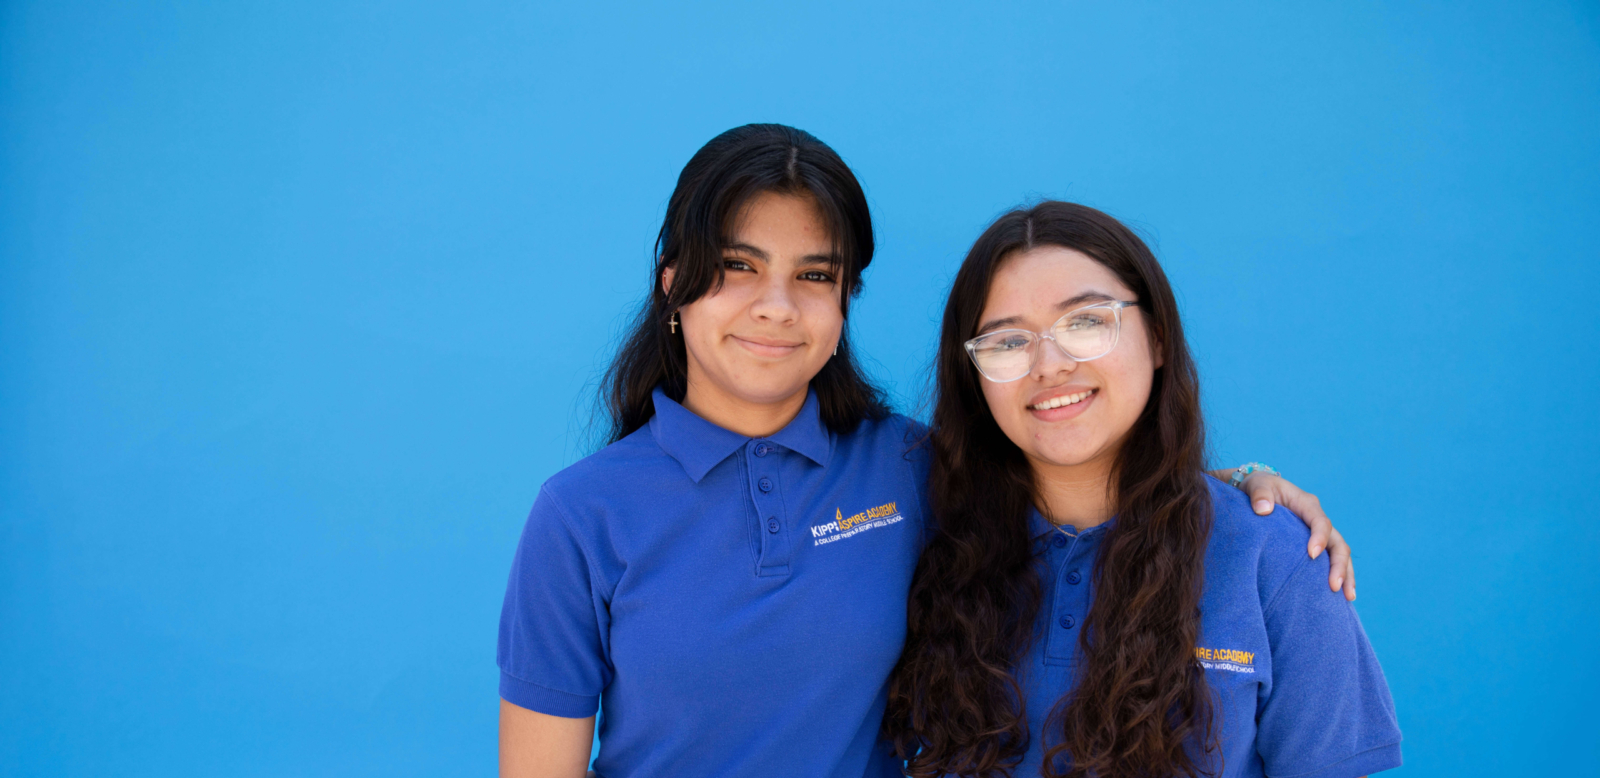 Dos estudiantes de la escuela secundaria en KIPP Texas - San Antonio sonriendo